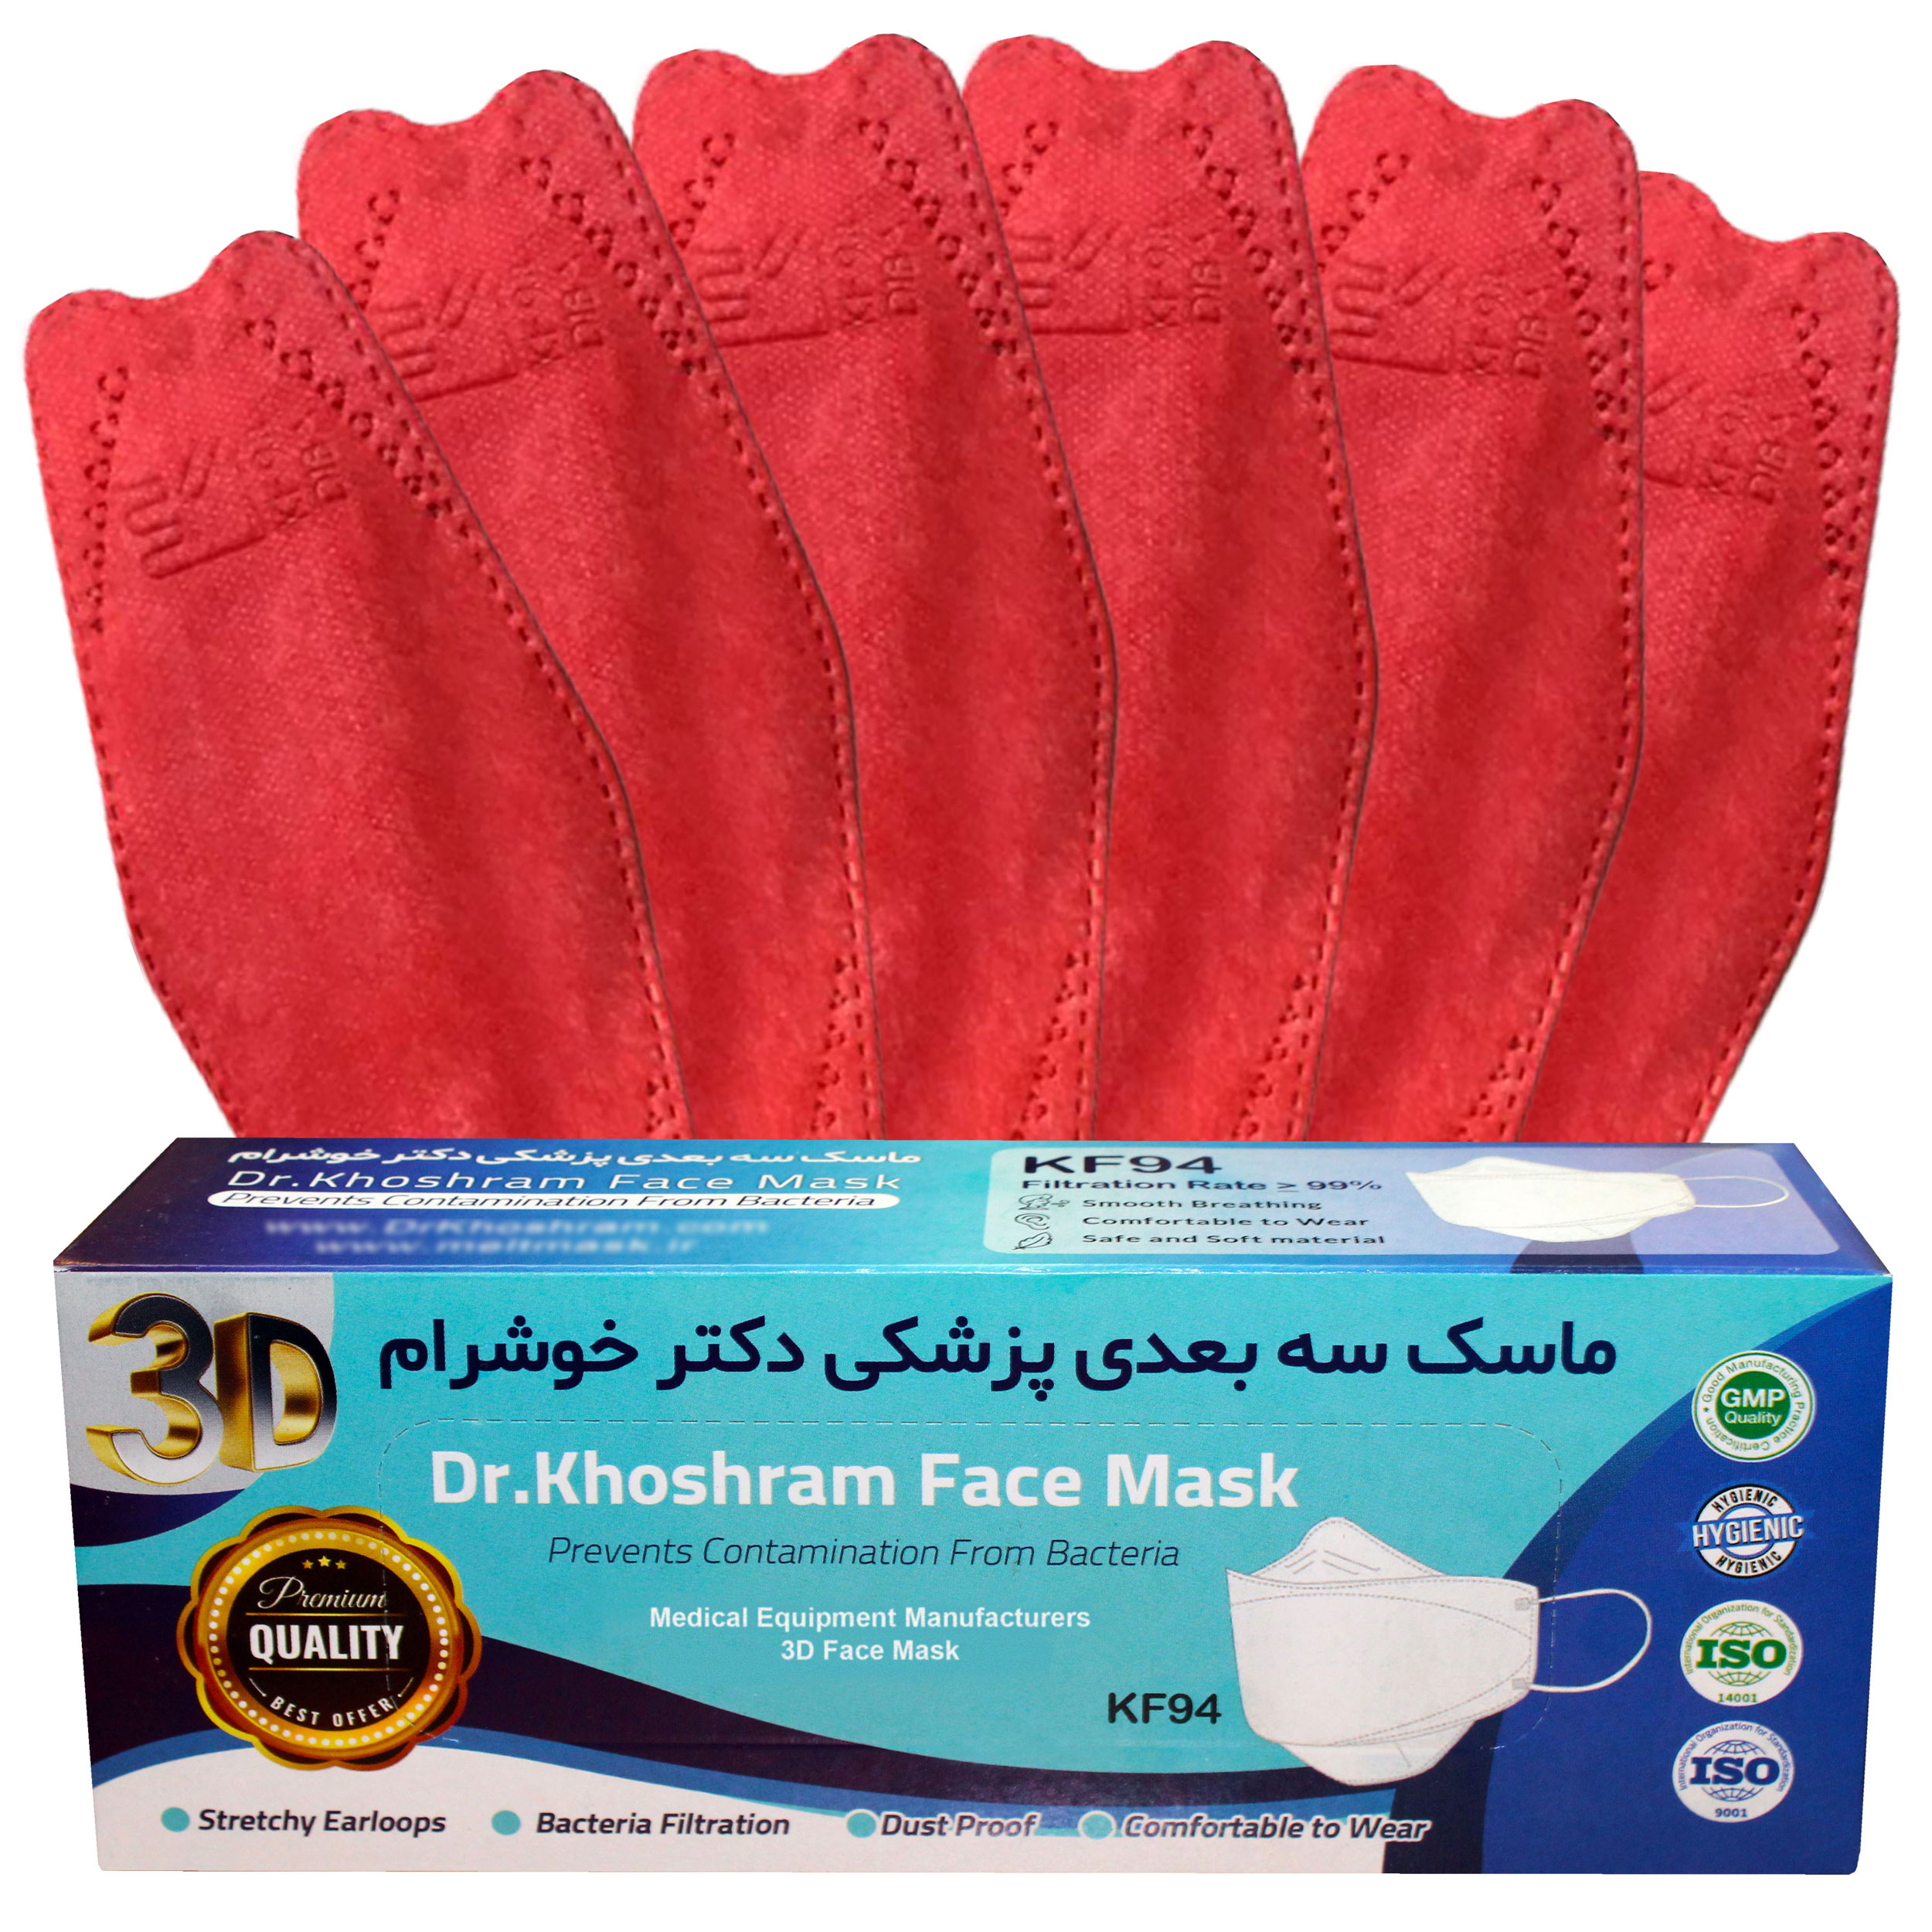 ماسک تنفسی دکترخوشرام مدل یلدا بسته 20 عددی